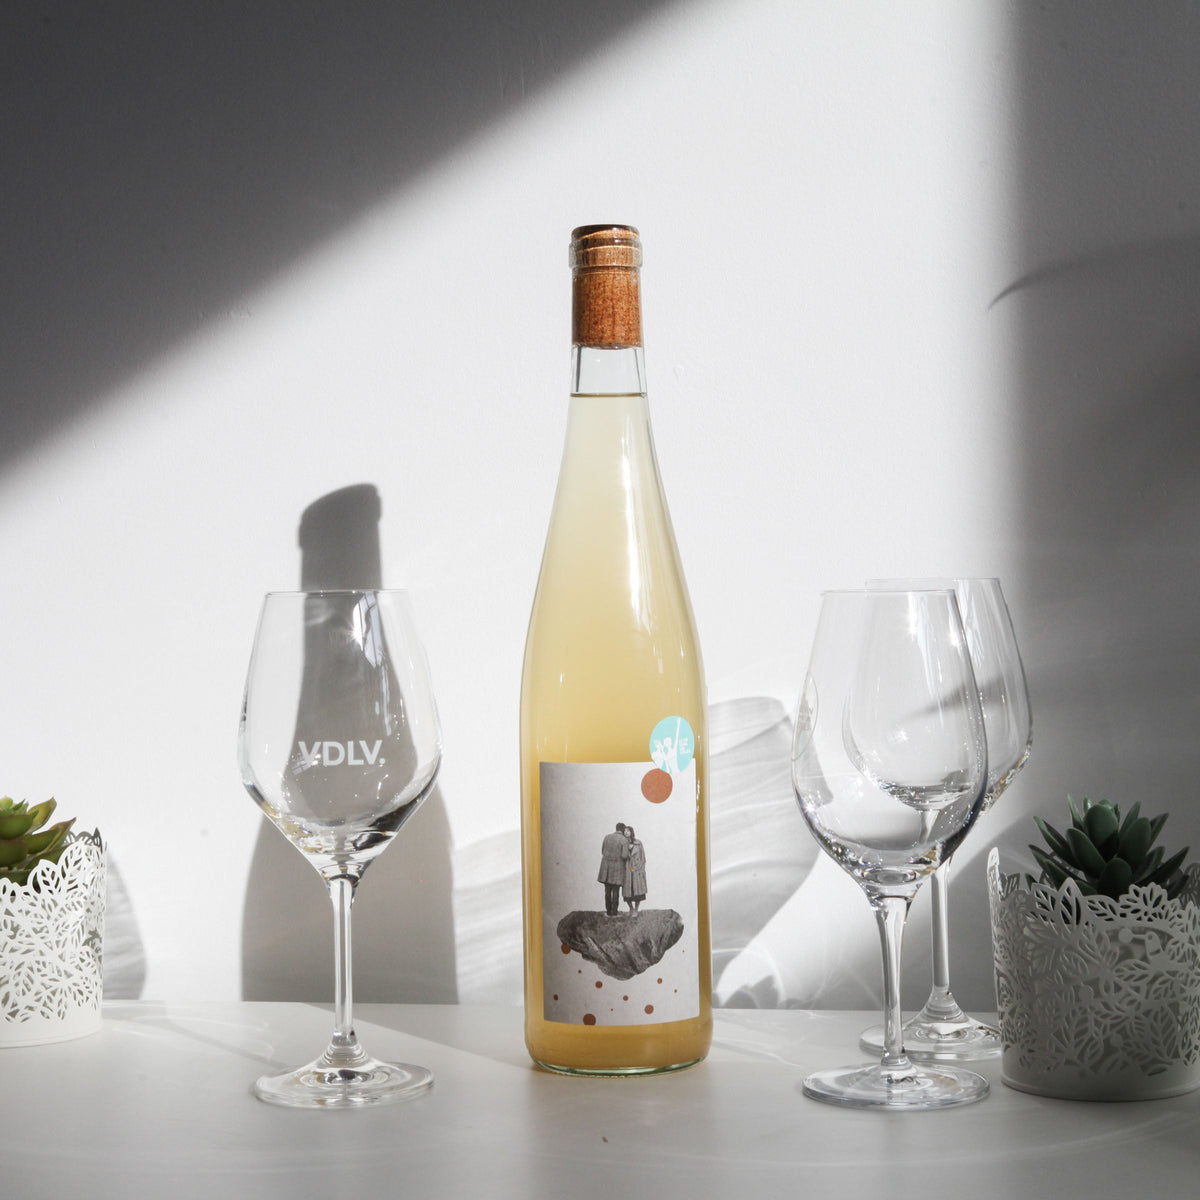 Bouteille de vin blanc nature du vigneron Jan-Philipp Bleeke en Allemagne: In between (Image: 2 sur 2)